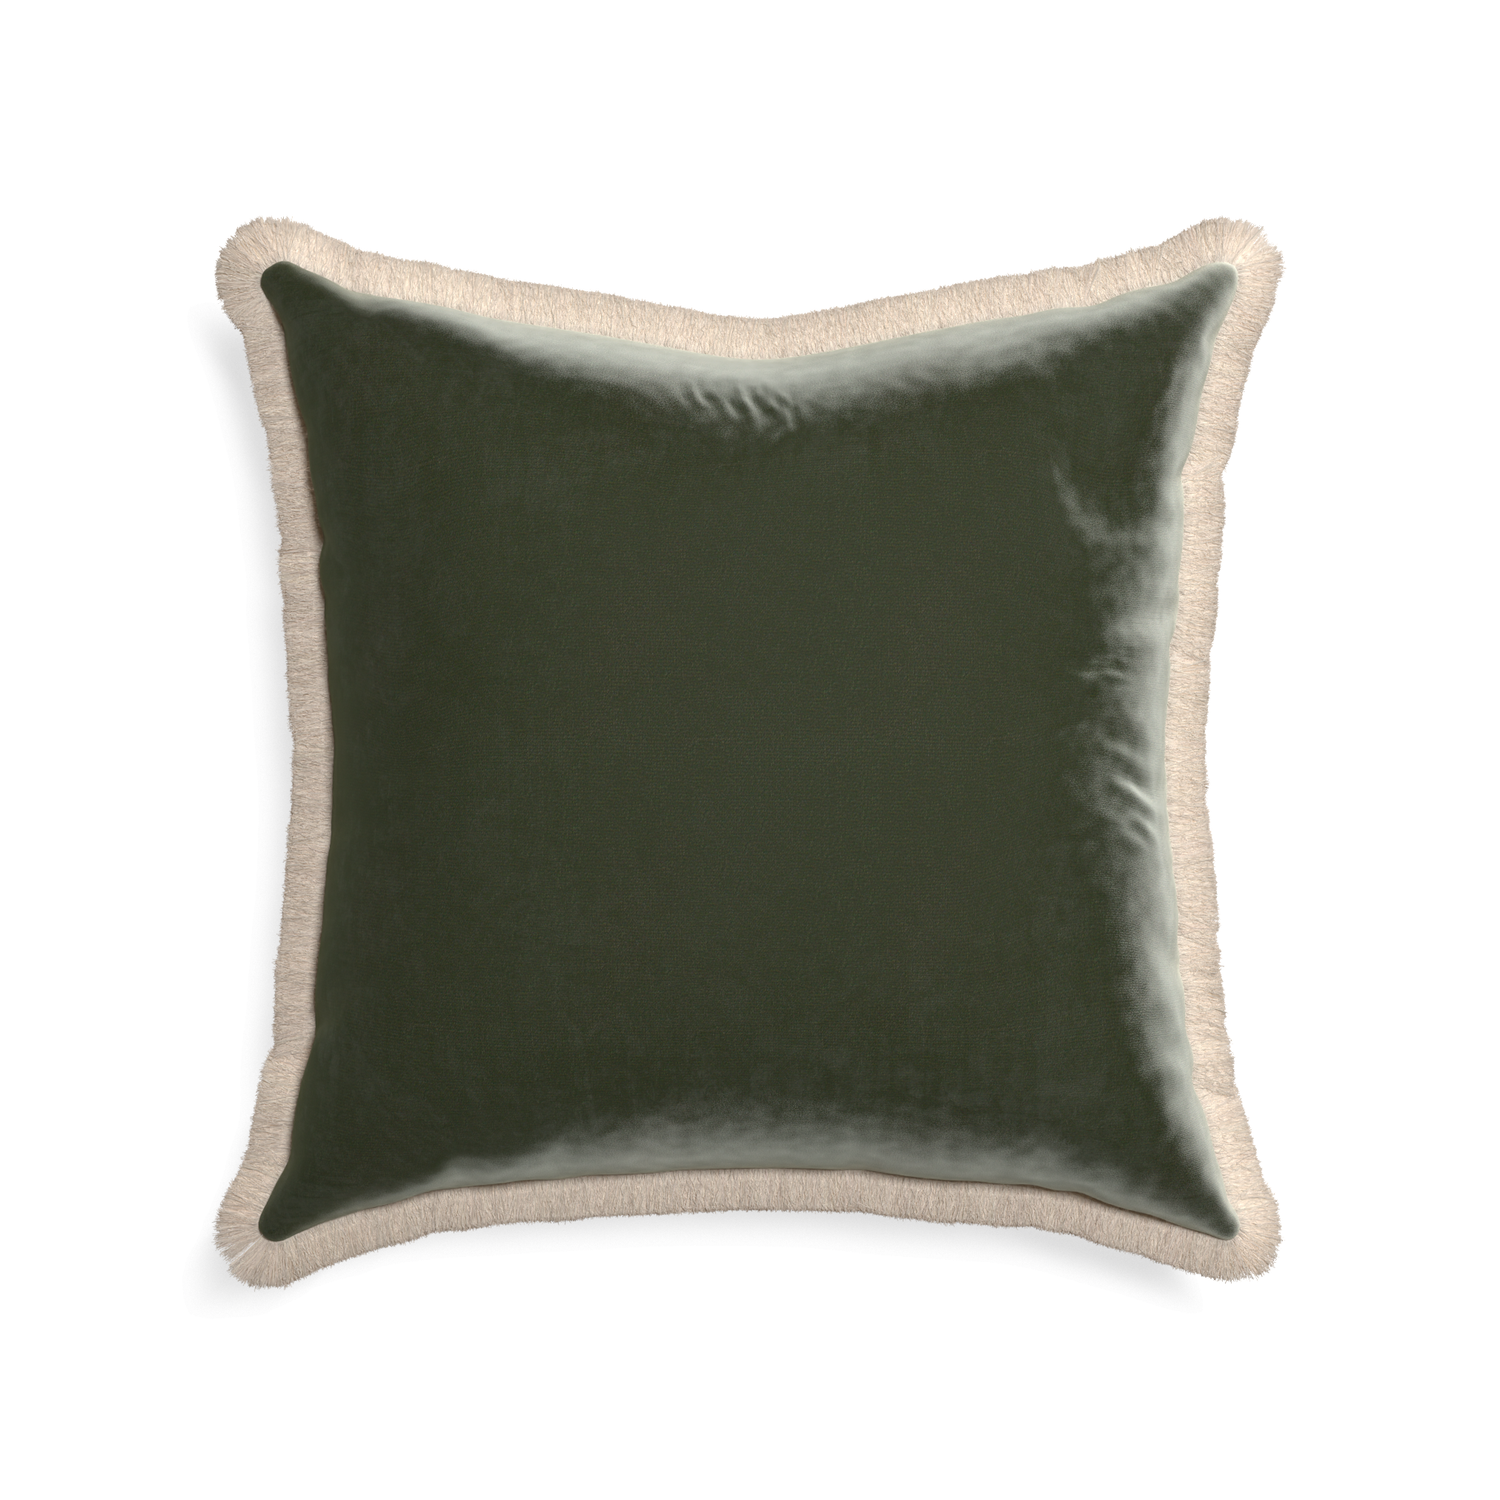 22-square fern velvet custom pillow with cream fringe on white background